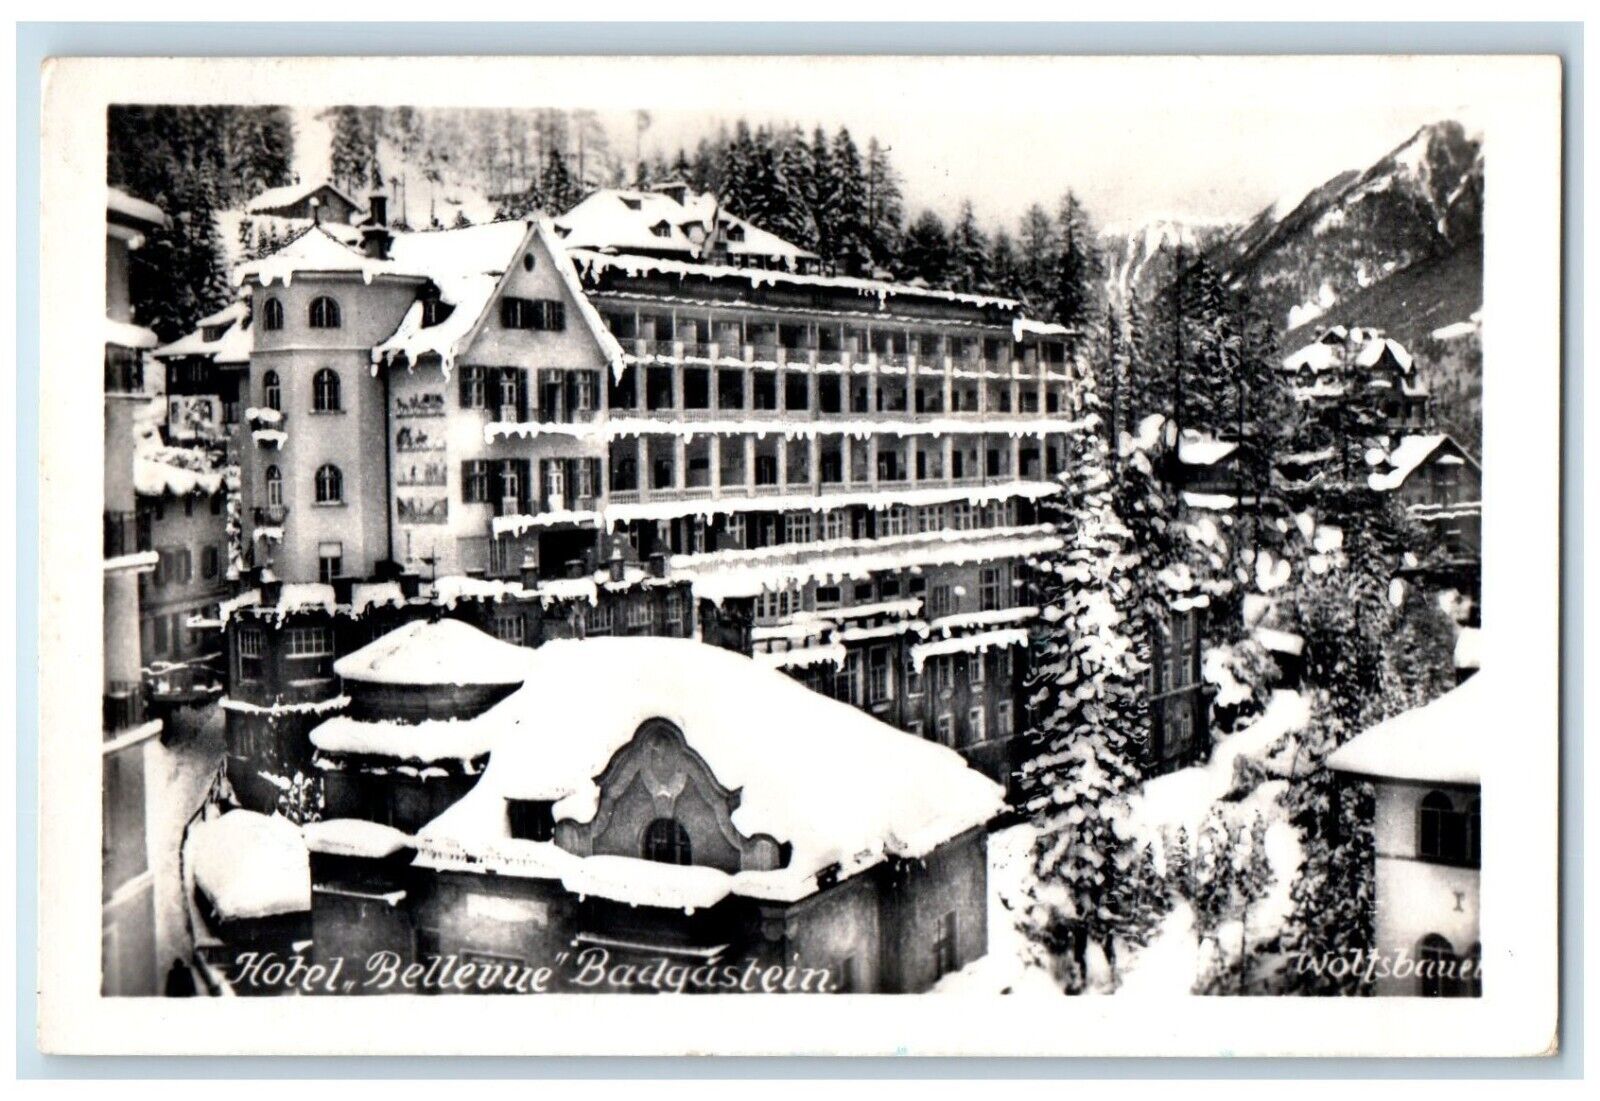 1952 Hotel Bellevue Building Badgastein Austria RPPC Photo Vintage Postcard